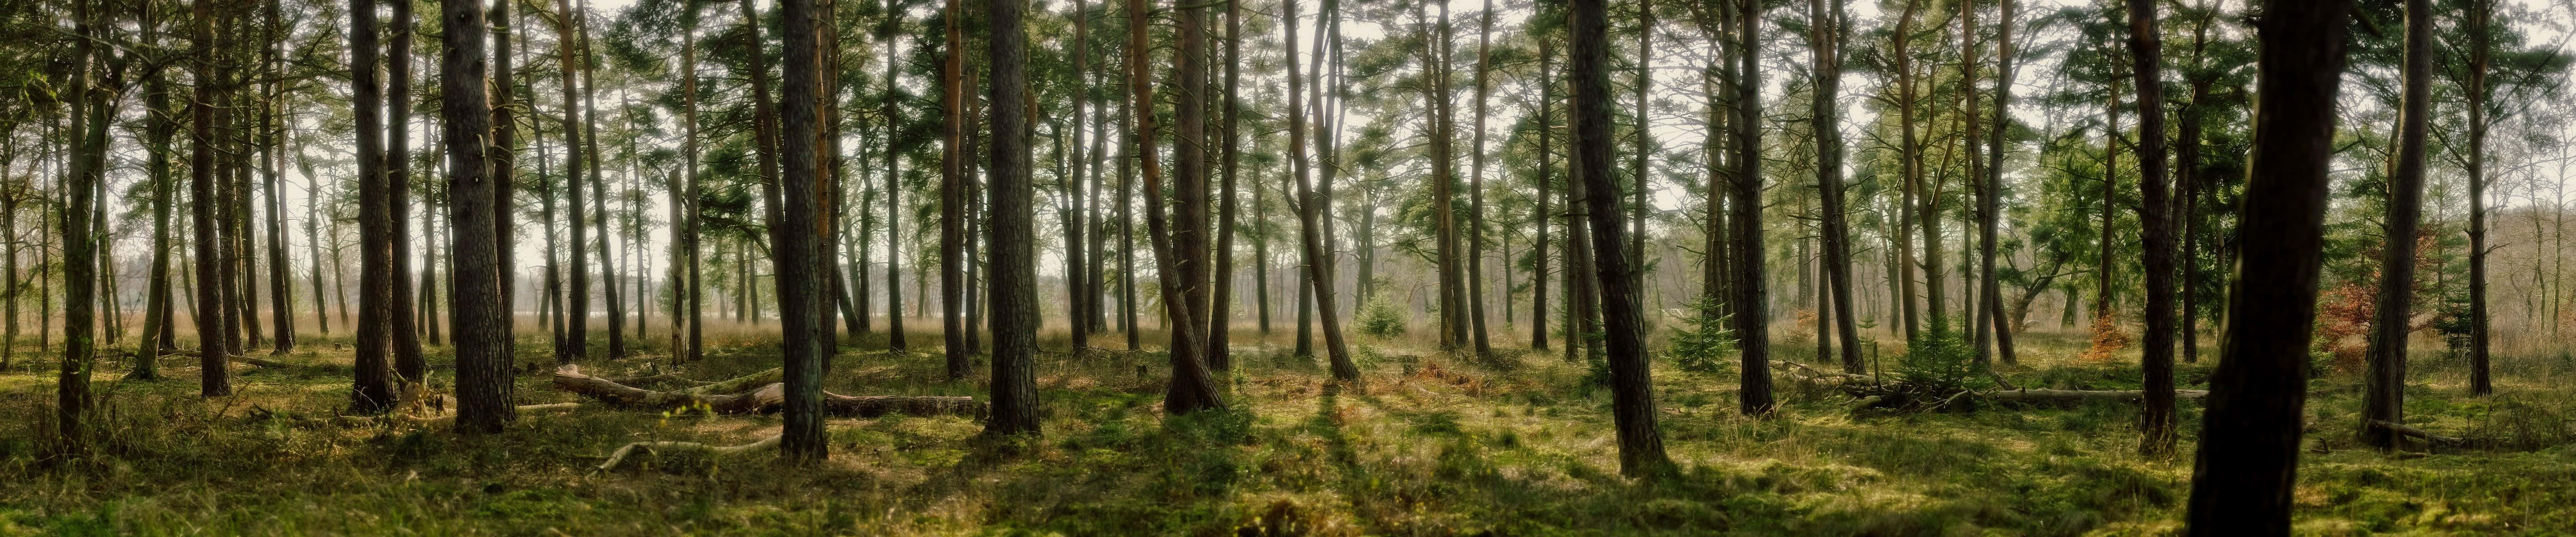 Atemberaubendepanorama-fotografie Eines Waldes Als Hintergrund Auf Dem Pixel 3 Monitor